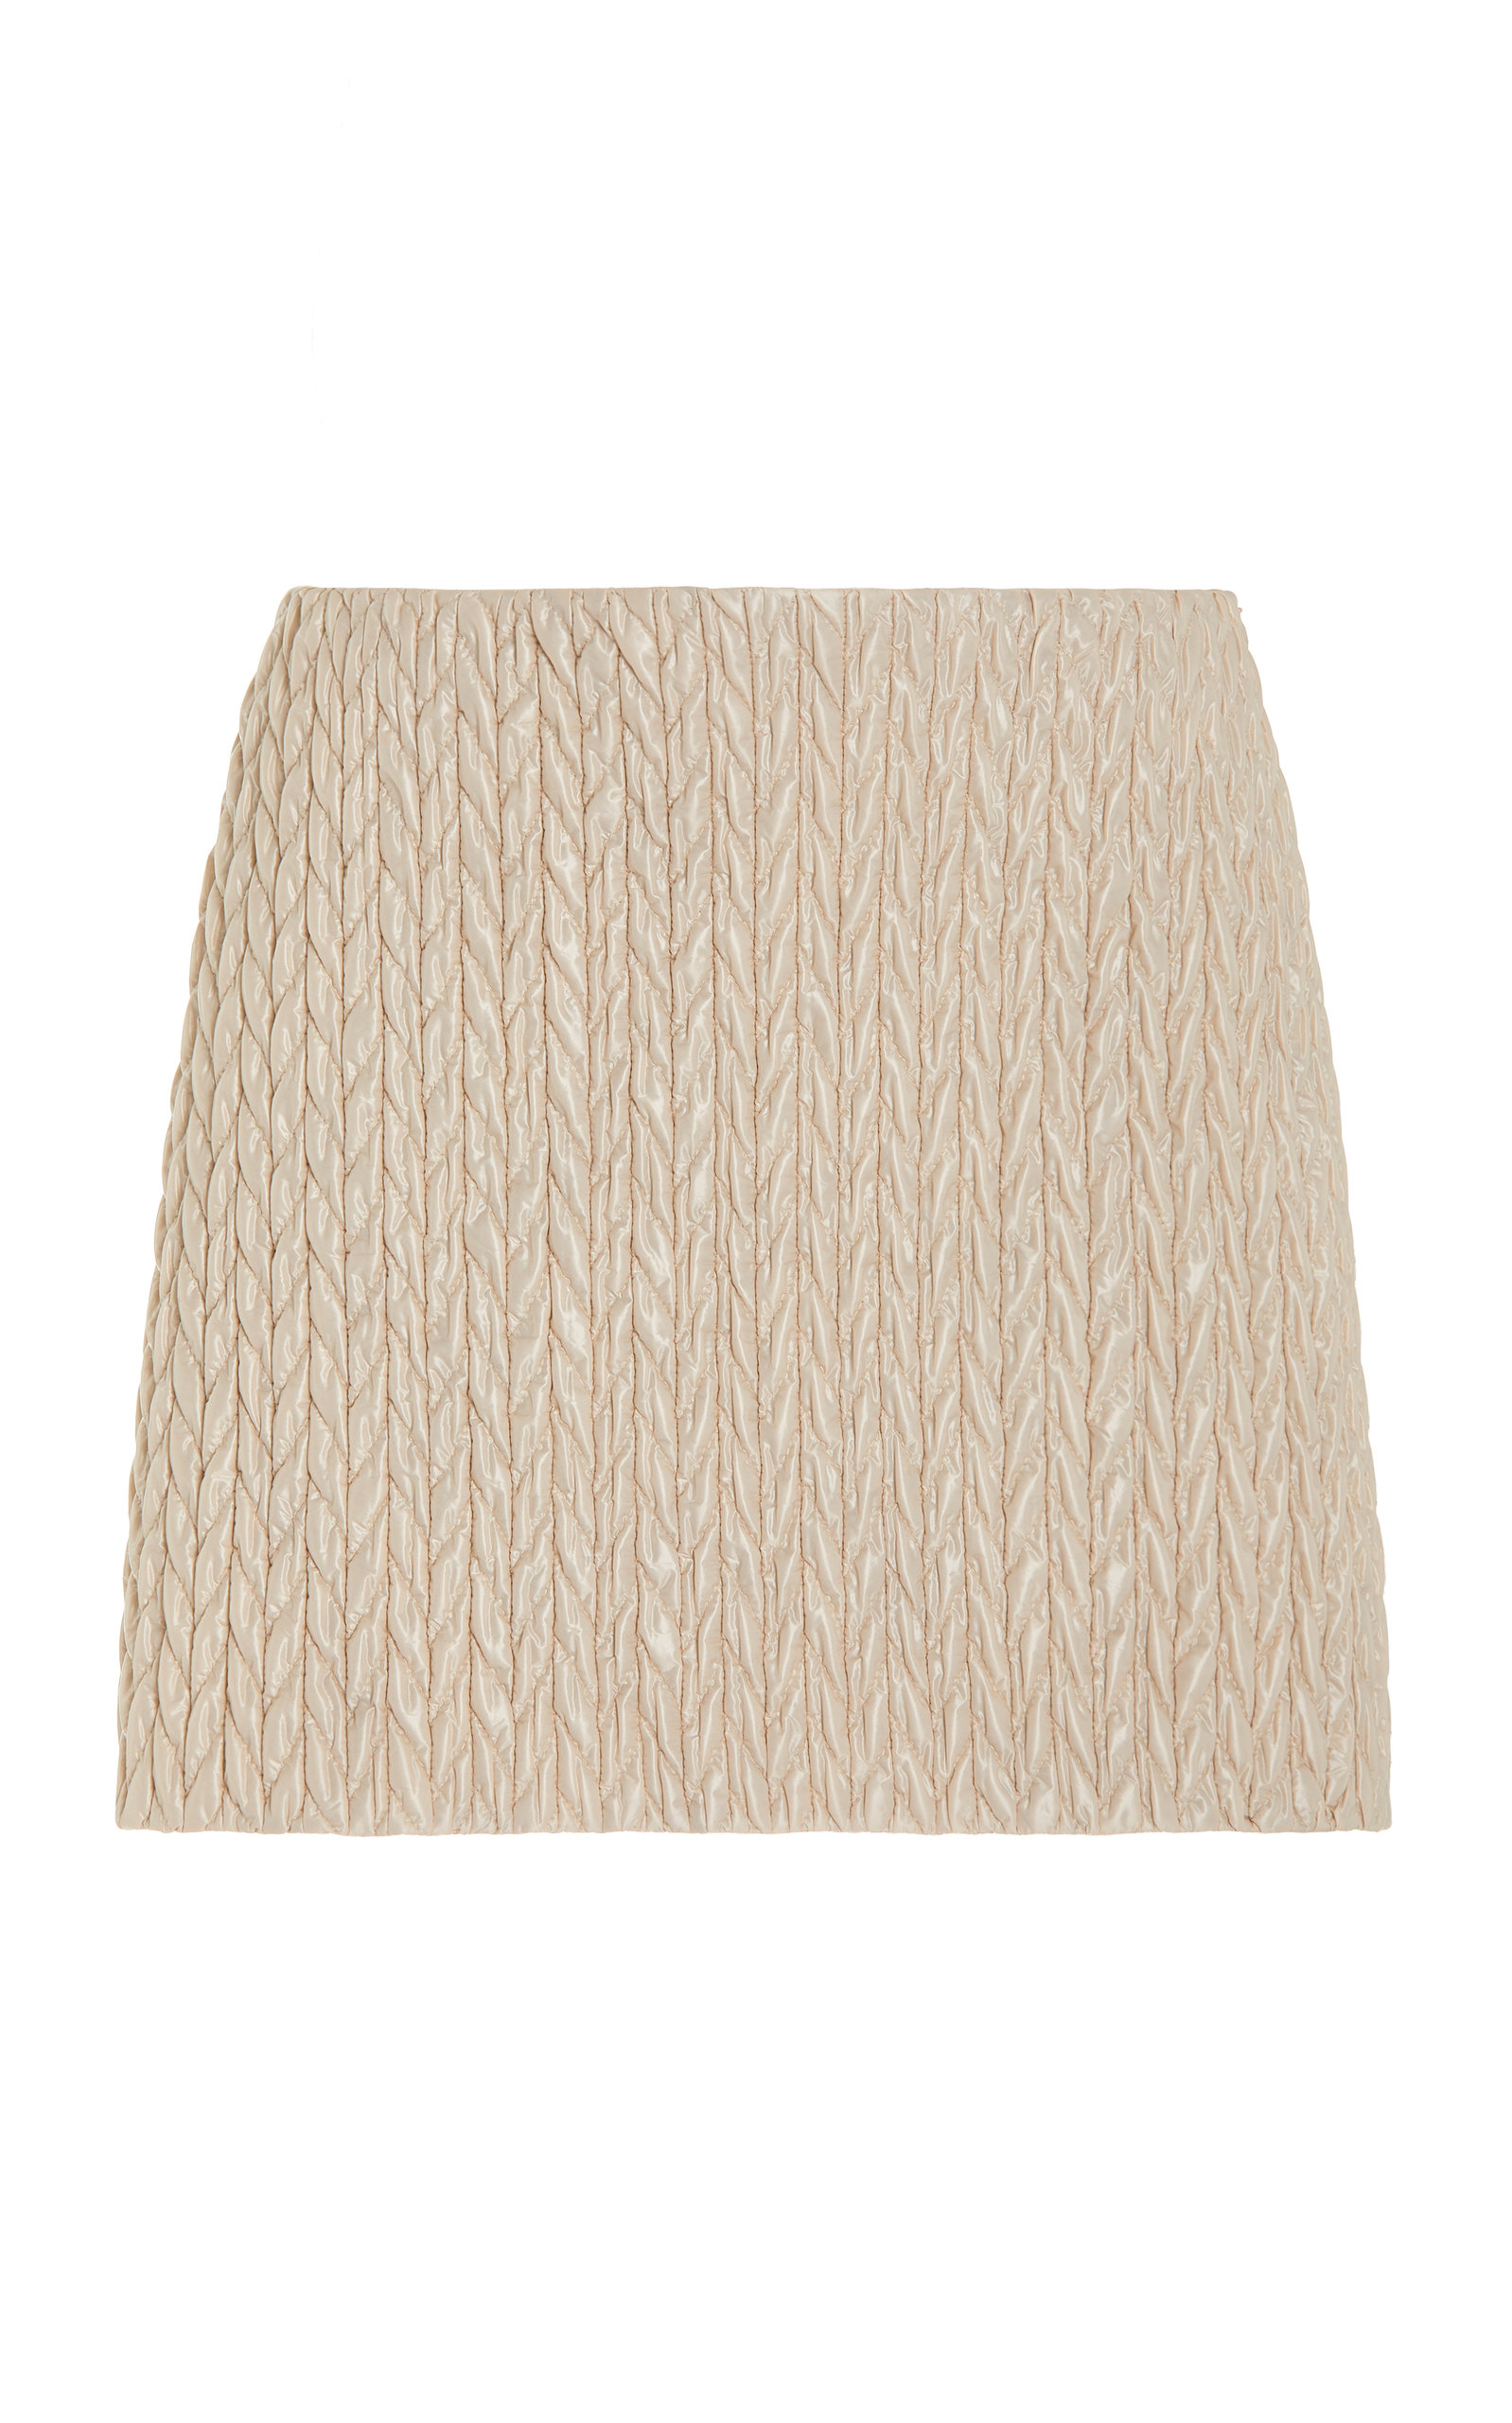 Miu Miu - Quilted Shell Mini Skirt - Neutral - IT 40 - Moda Operandi